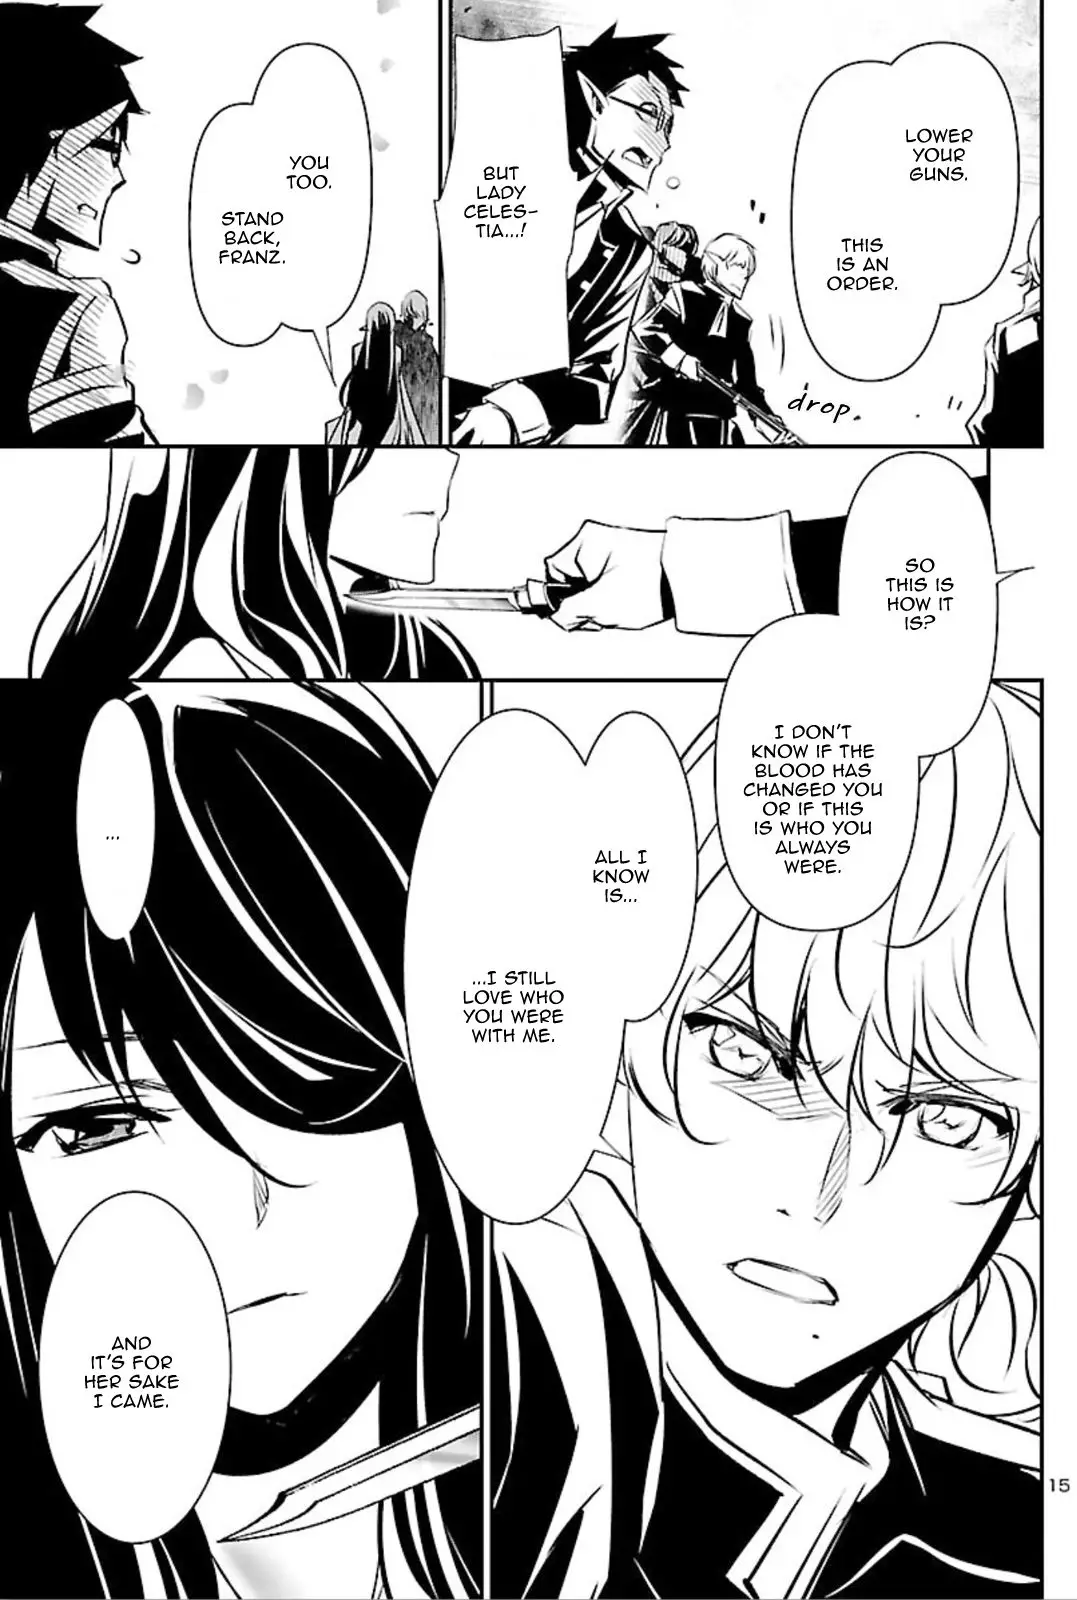 Shinju no Nectar - 44 page 15